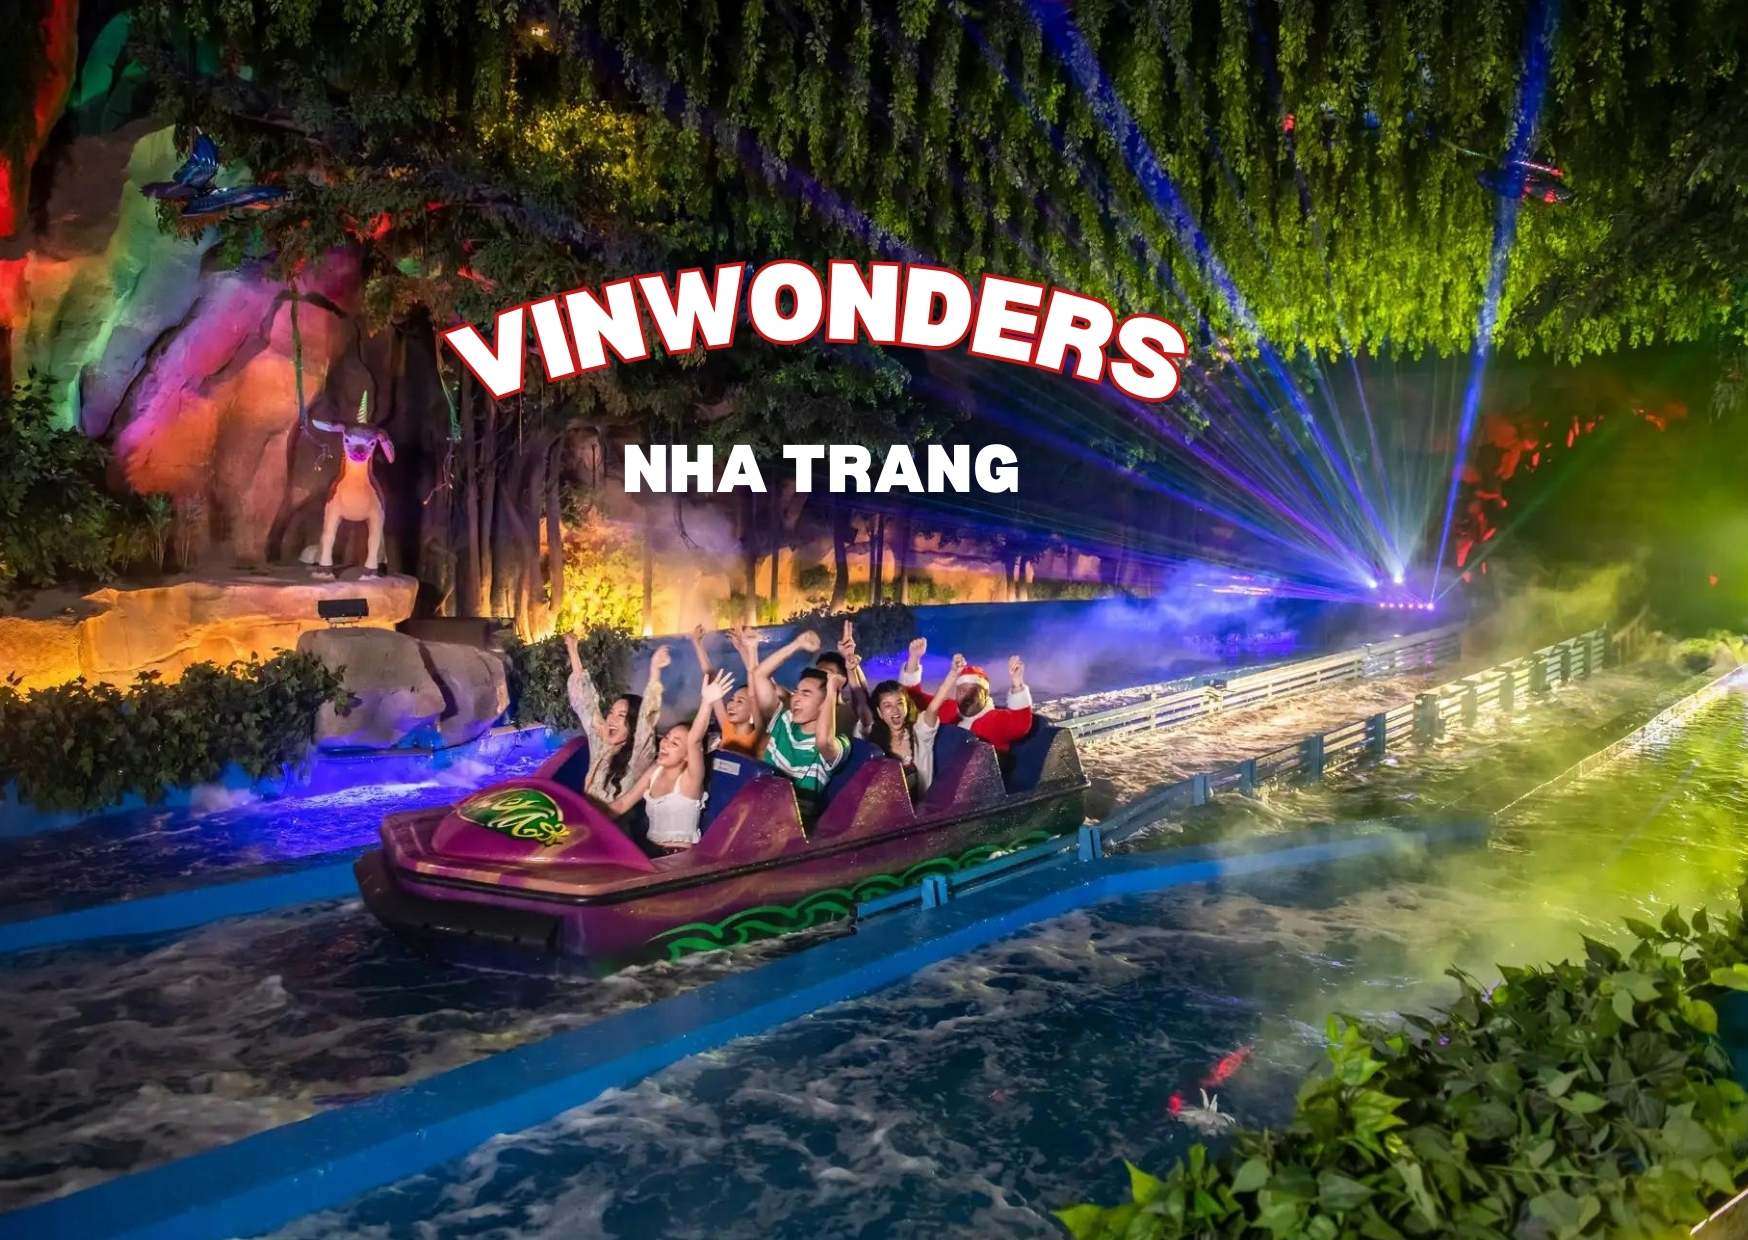 VinWonders Nha Trang - New Life Travel